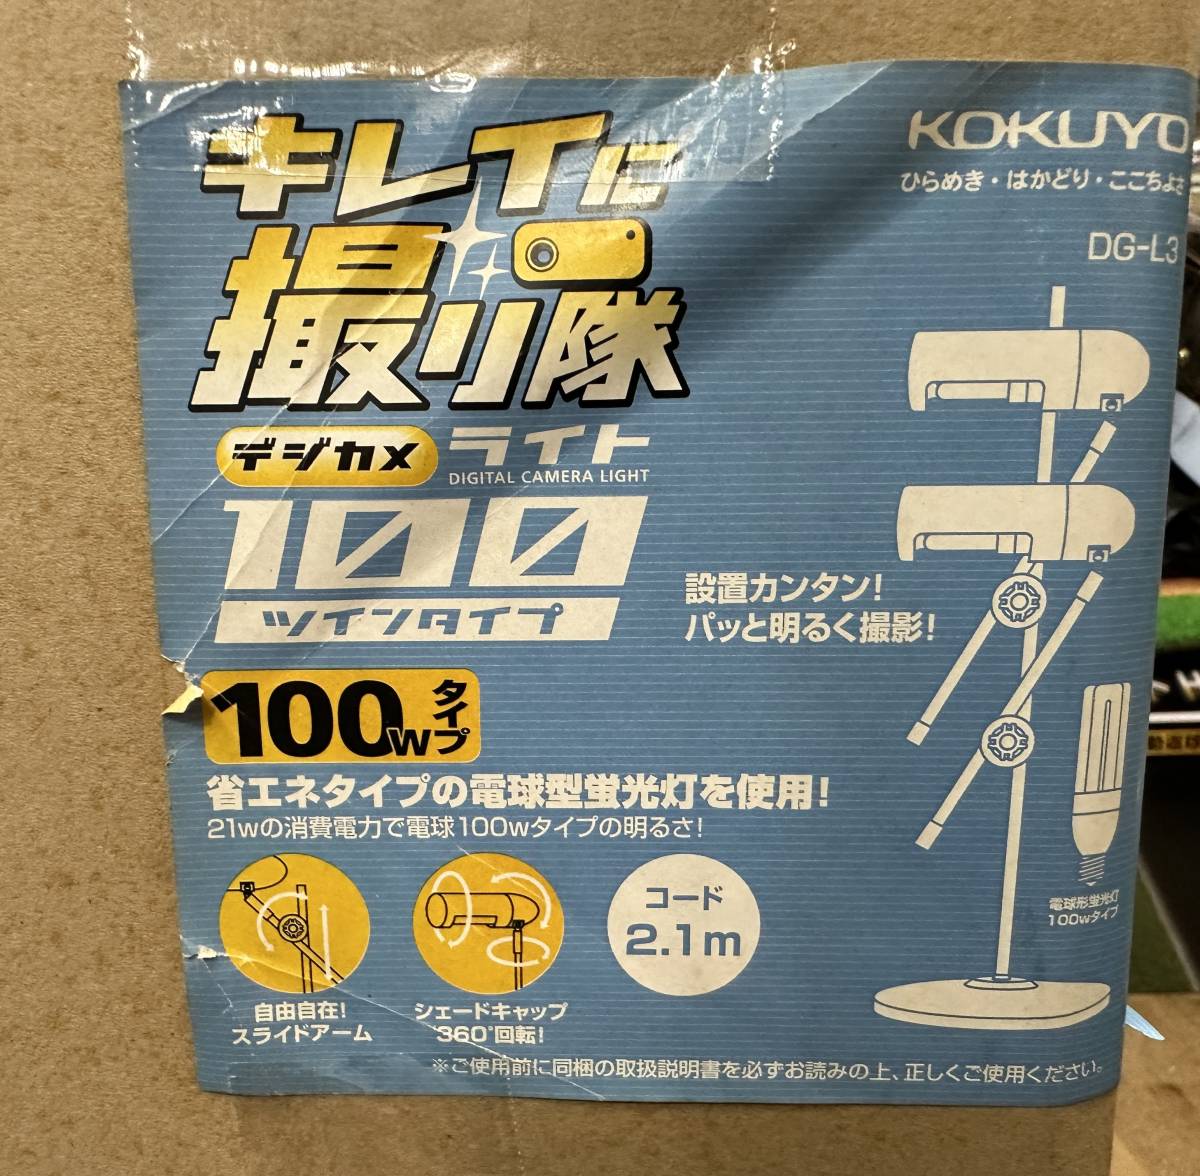 ◇未使用品 KOKUYO デジカメライト 100W ツインタイプ DG-L3 照明器具 照明機材 撮影機材 ライト_画像5